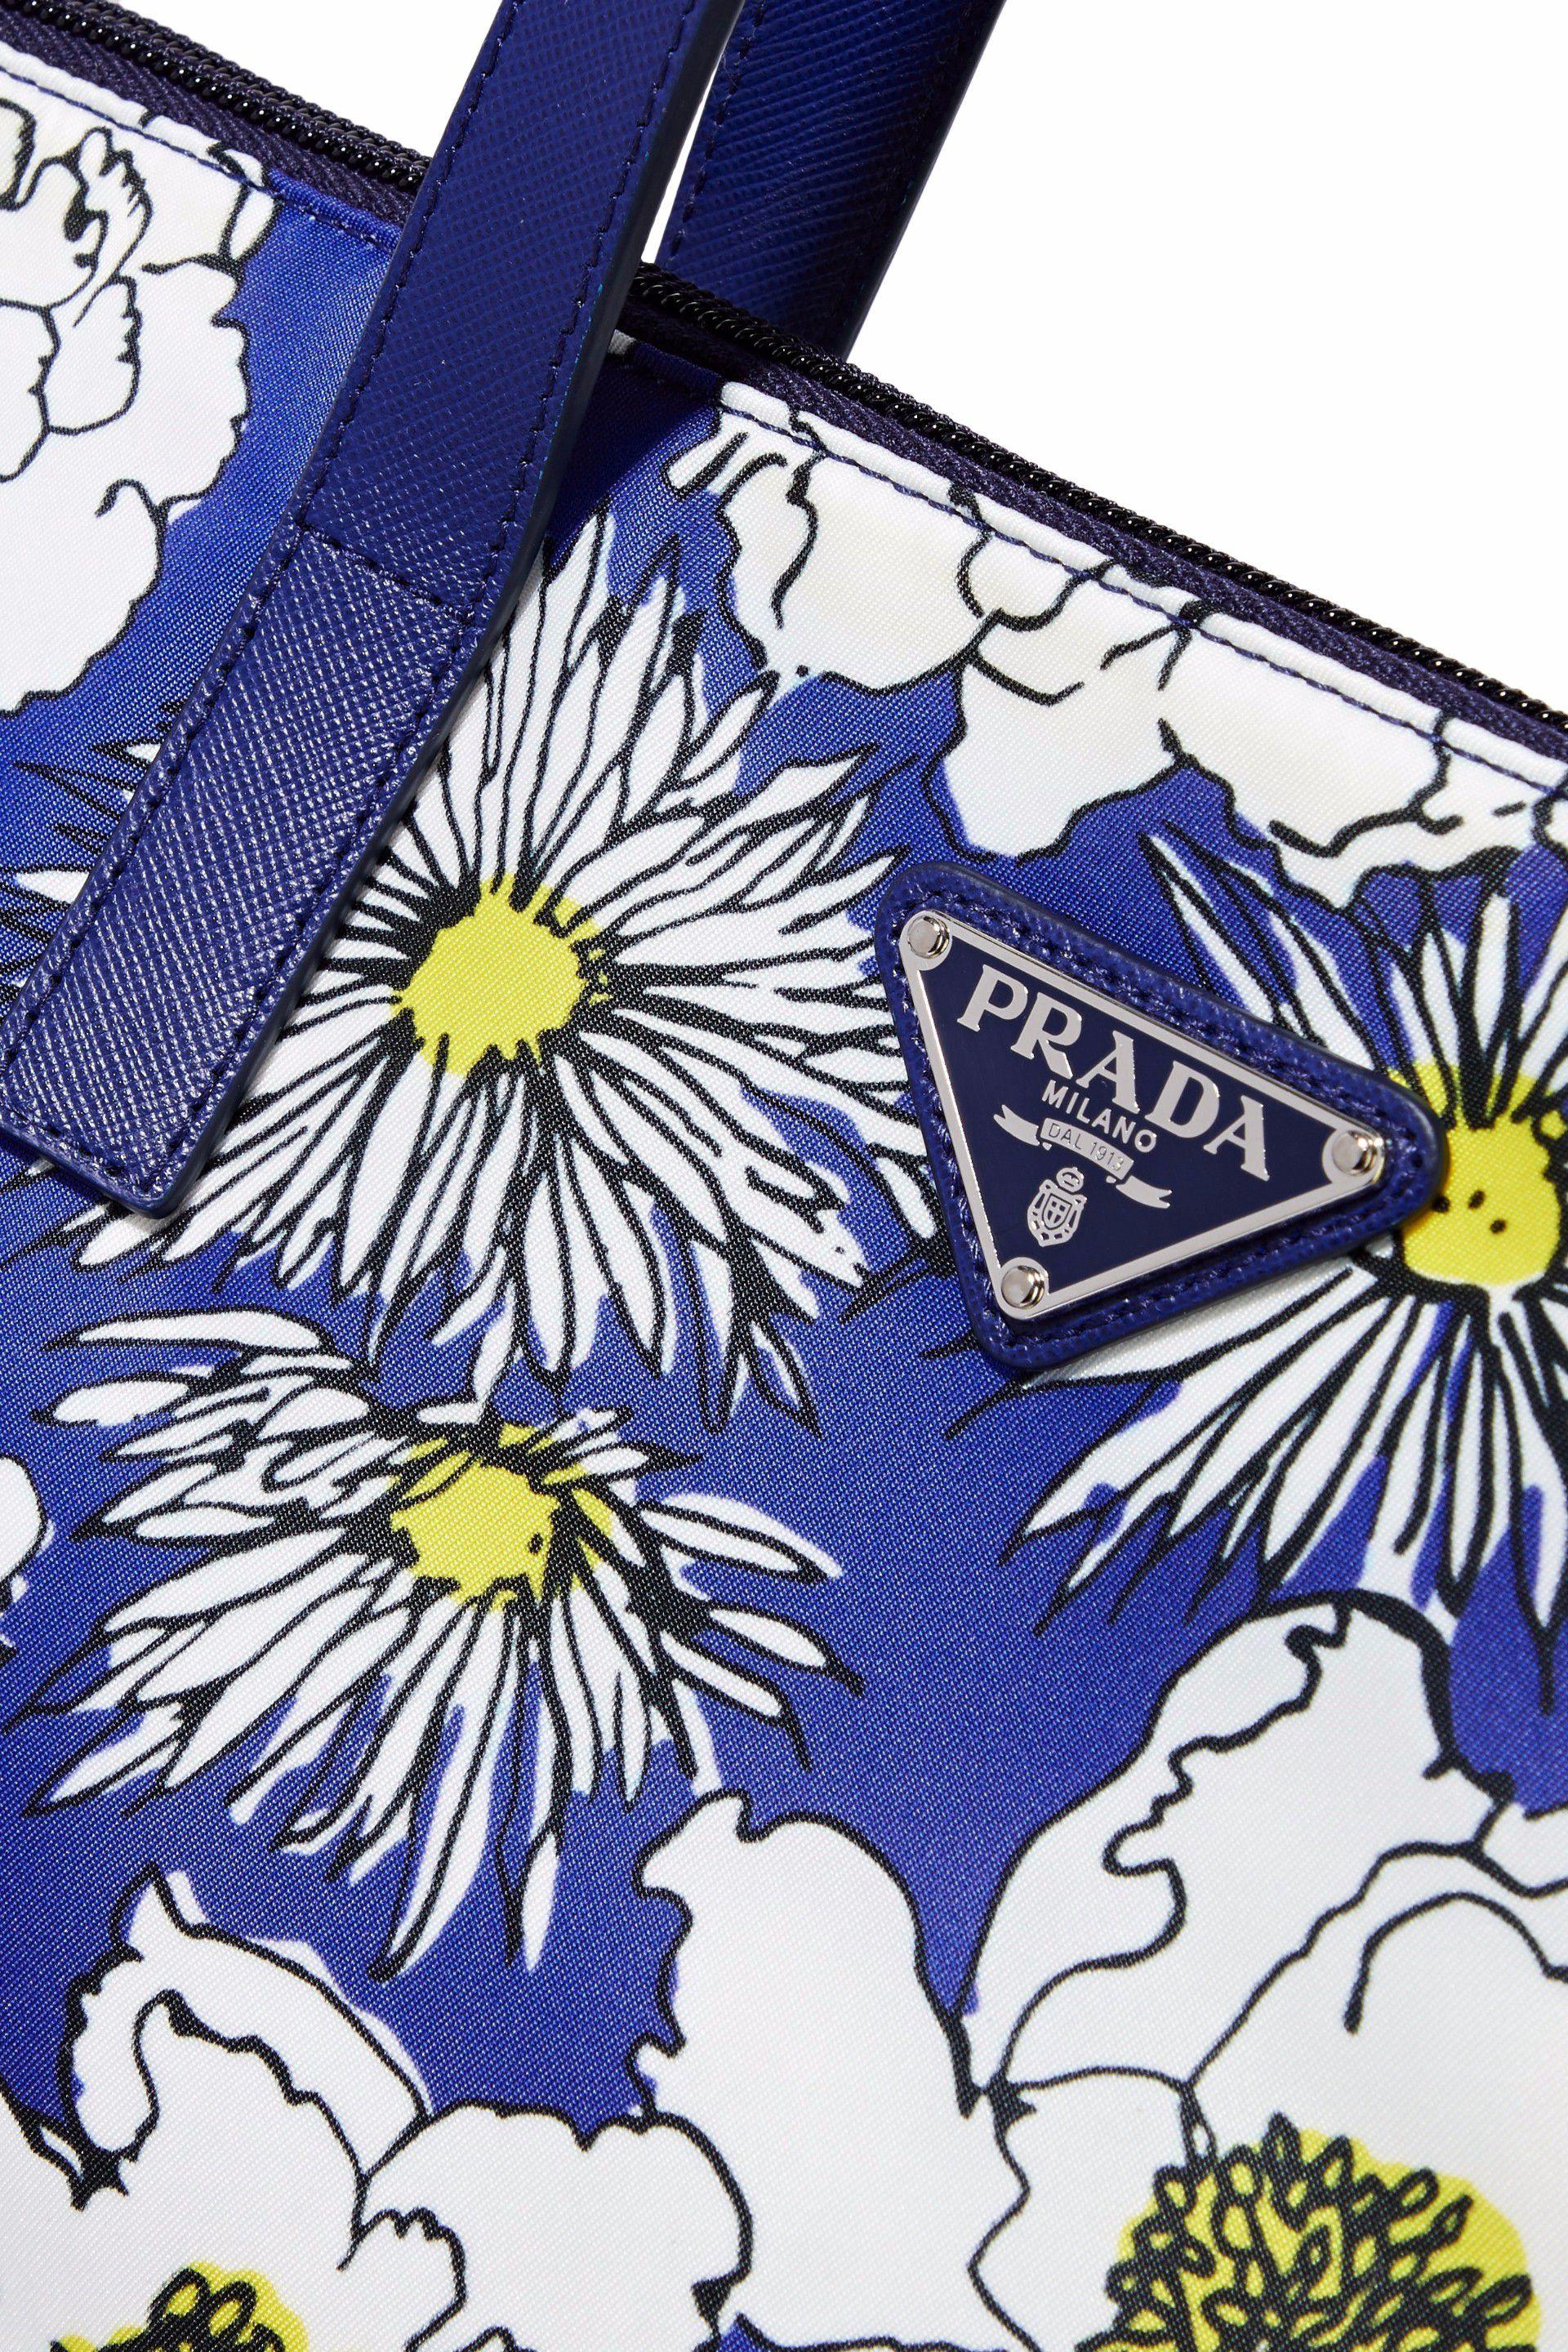 prada donna floral print shoulder bag